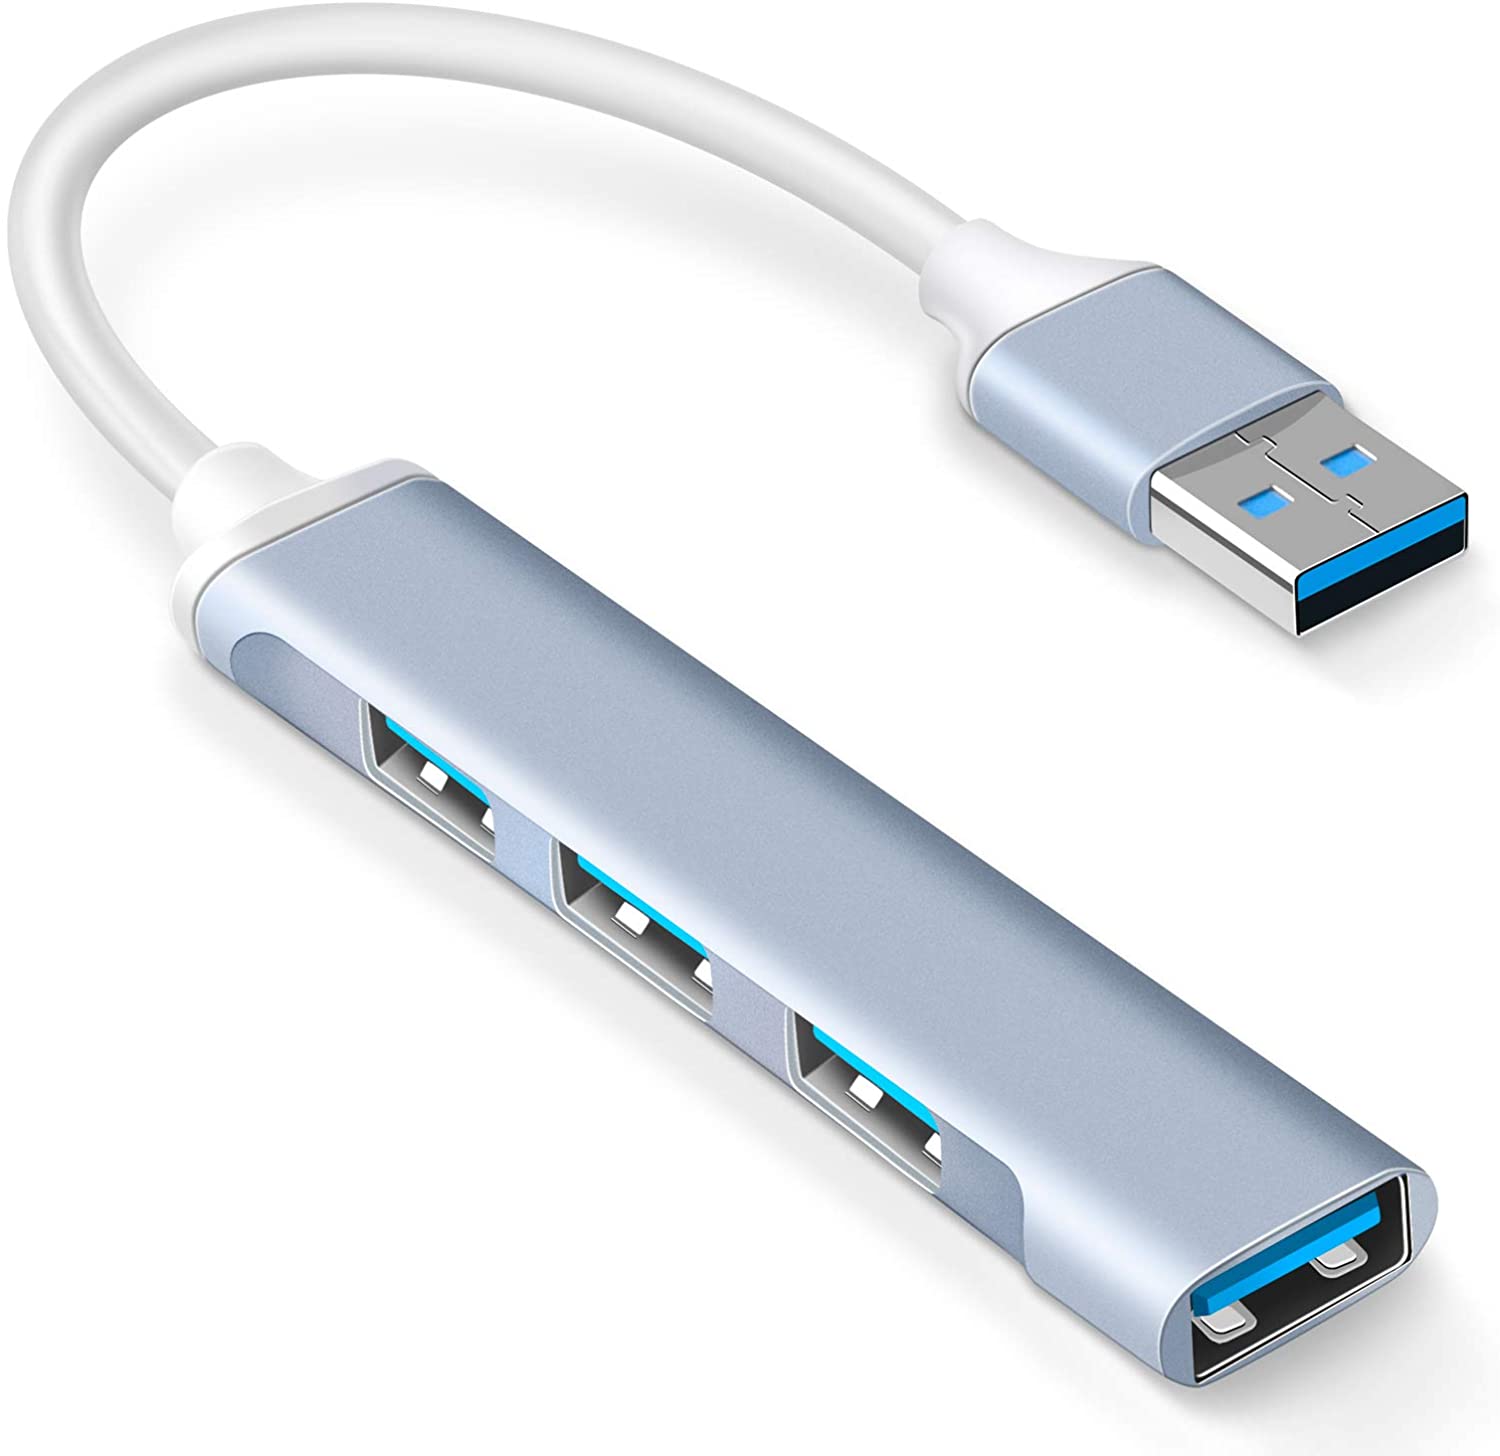 ইউএসবি হাব নরমাল ( USB hub normal)